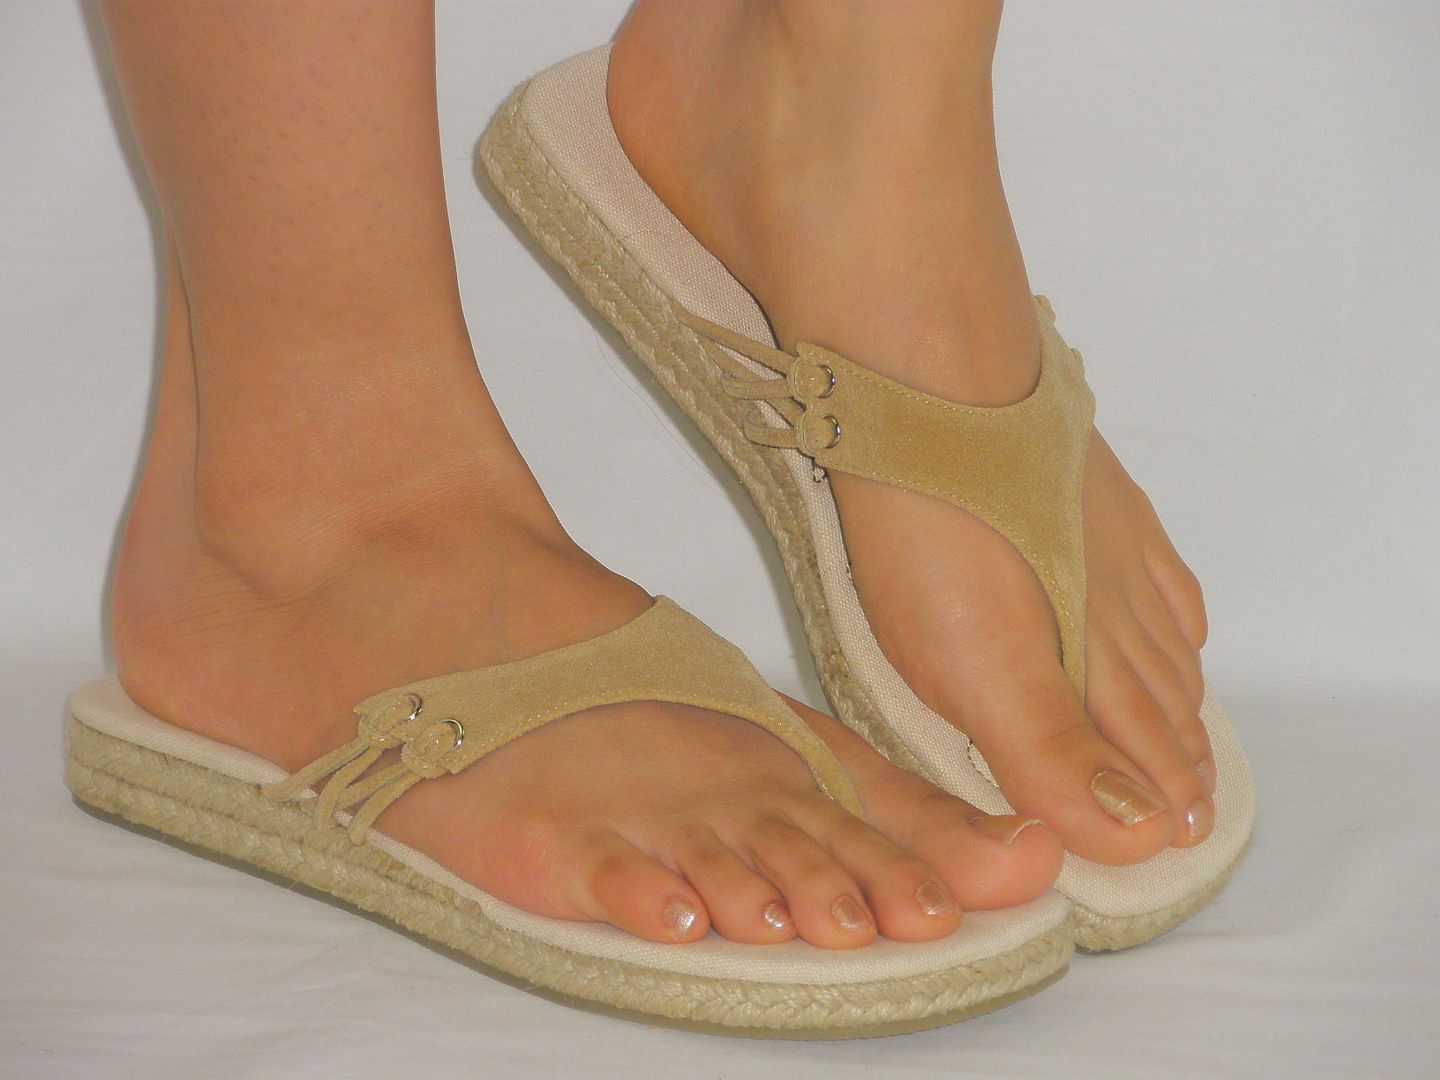 Espadrille Thong Flip Flops Sandalssuper Soft And Comfy Faux Suede Lightweight Ebay 9418